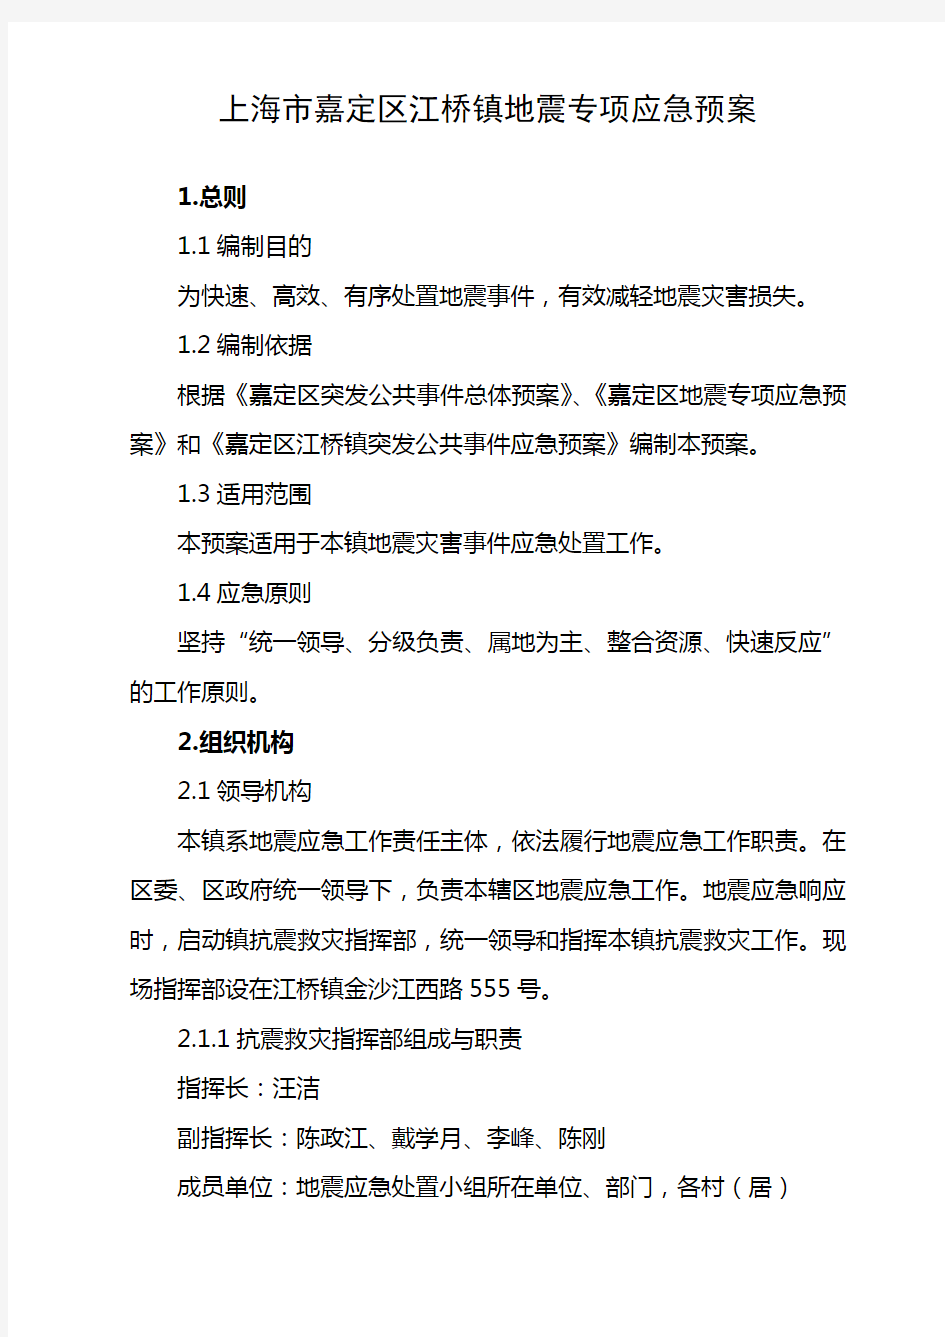 上海嘉定区江桥镇地震专项应急预案